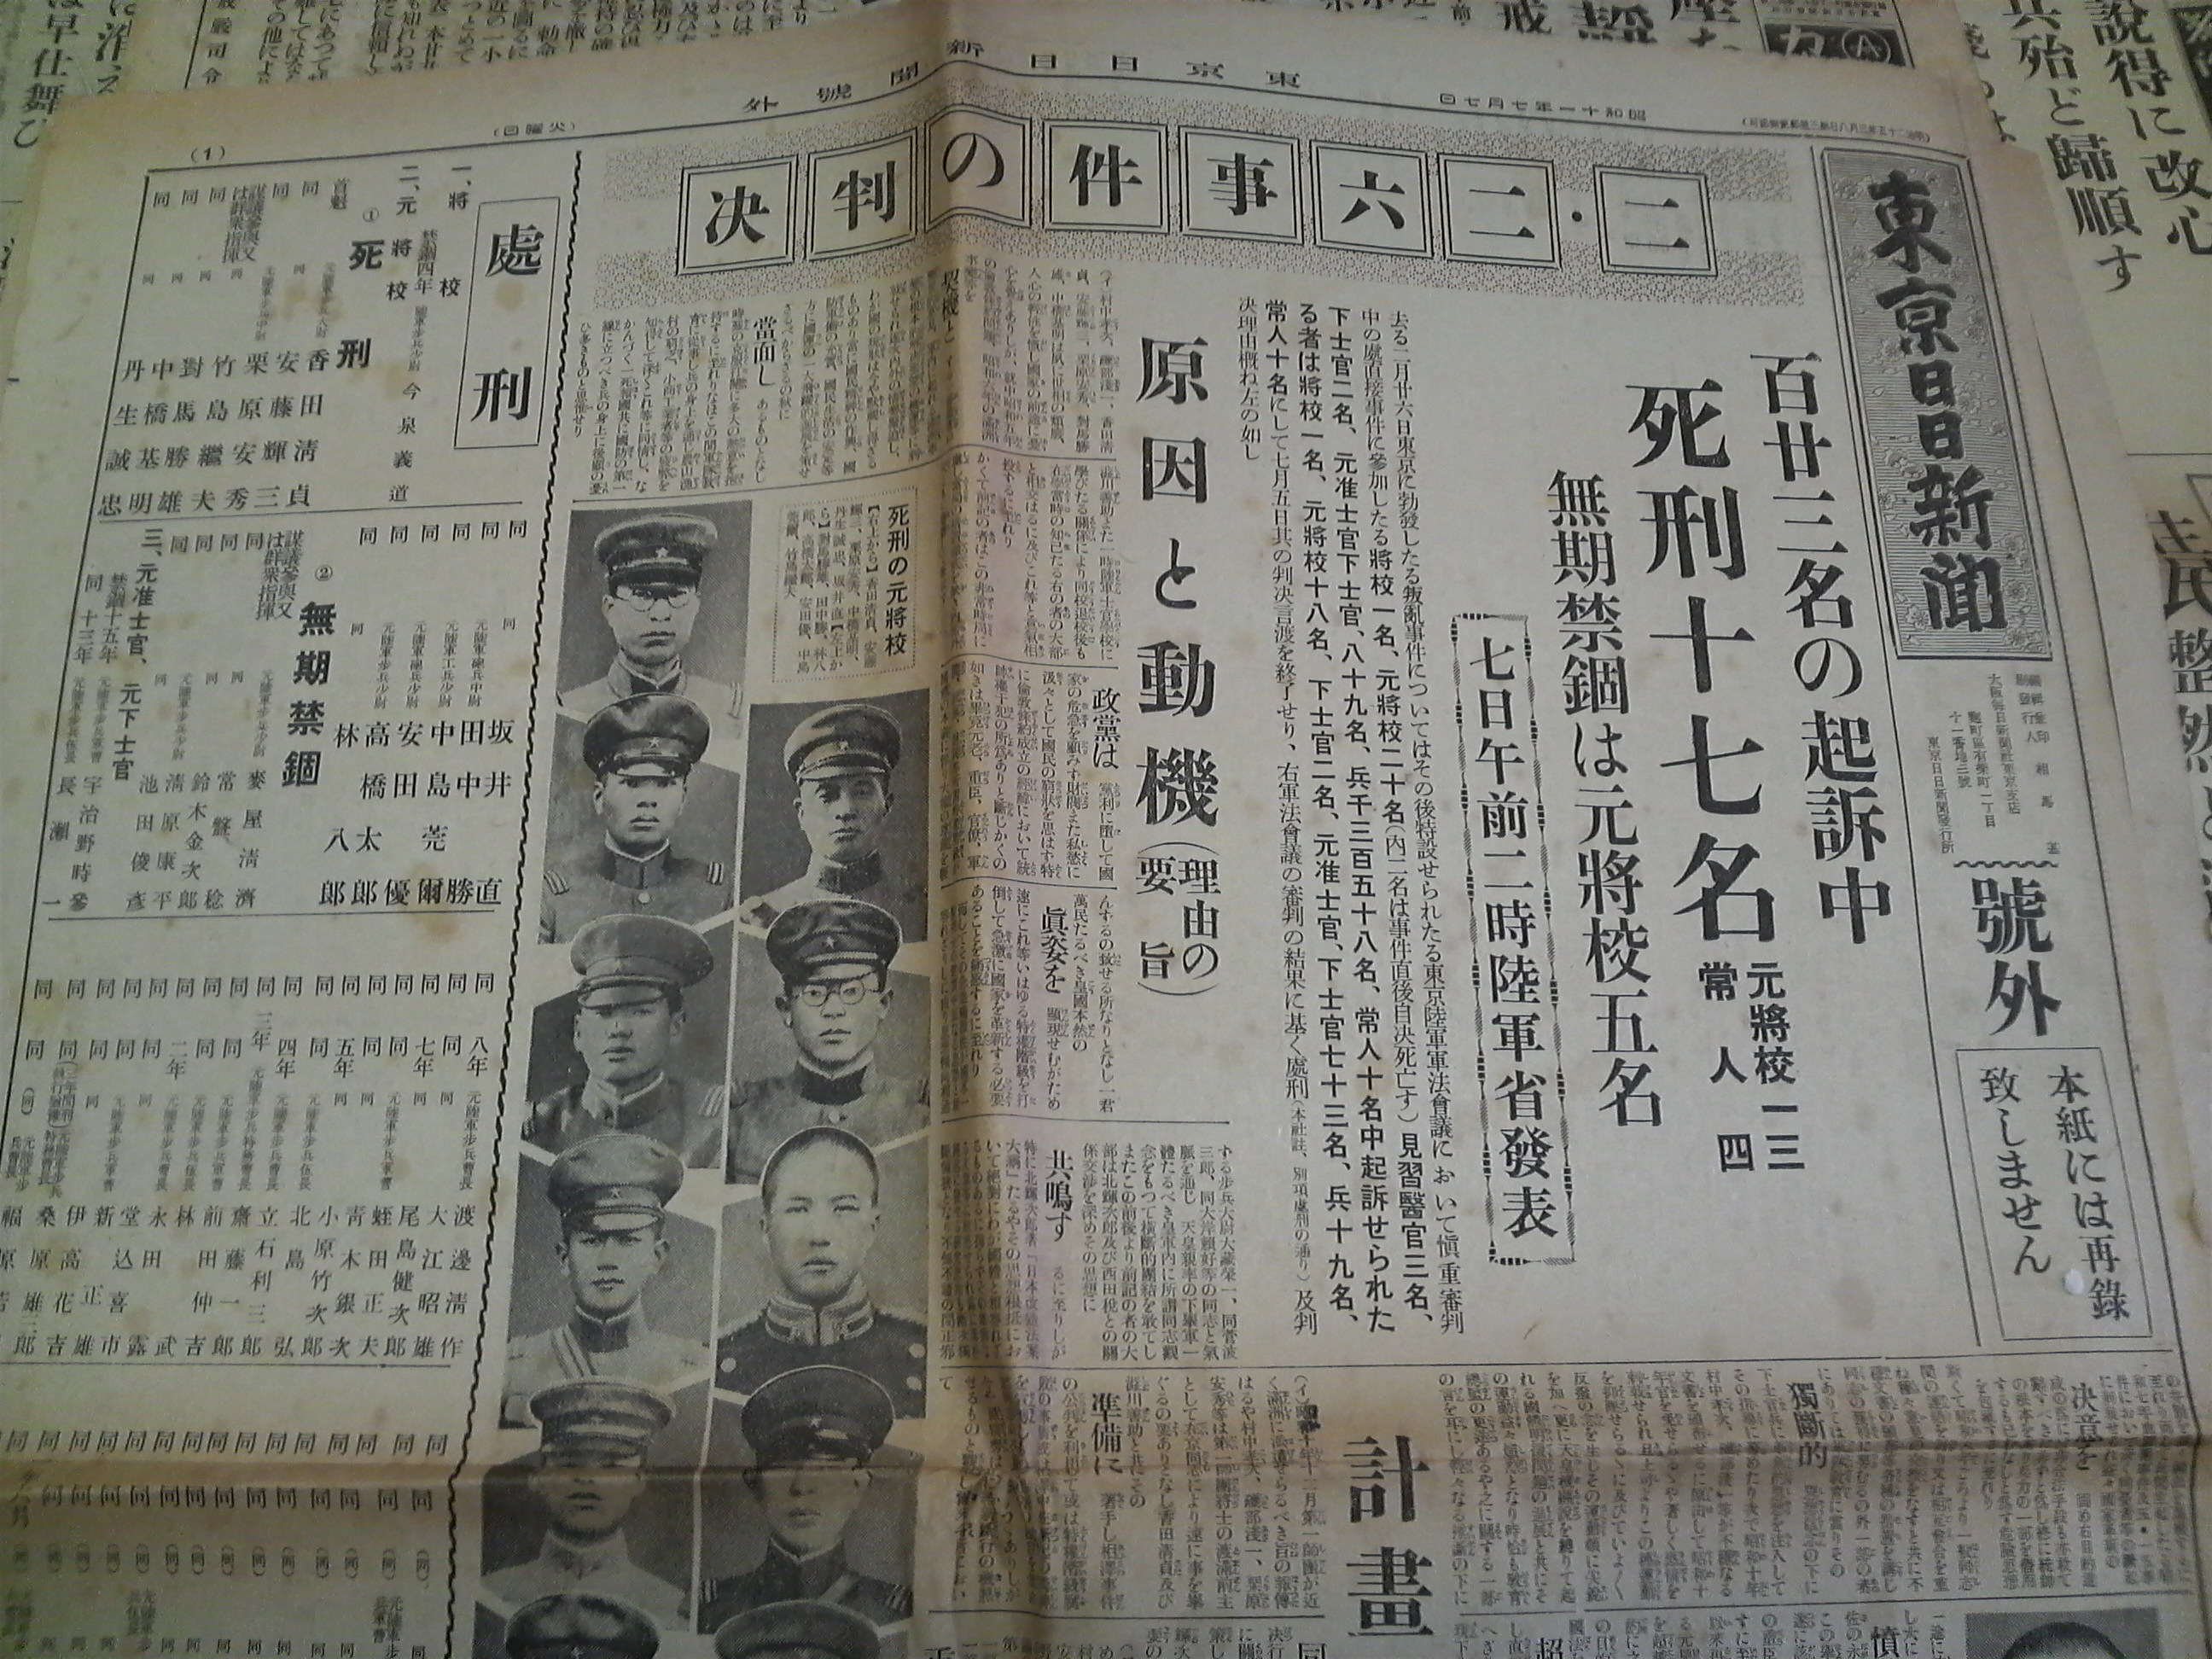 二・二六事件(昭和11年2月26日) 新聞 :東京の古本屋 小川書店